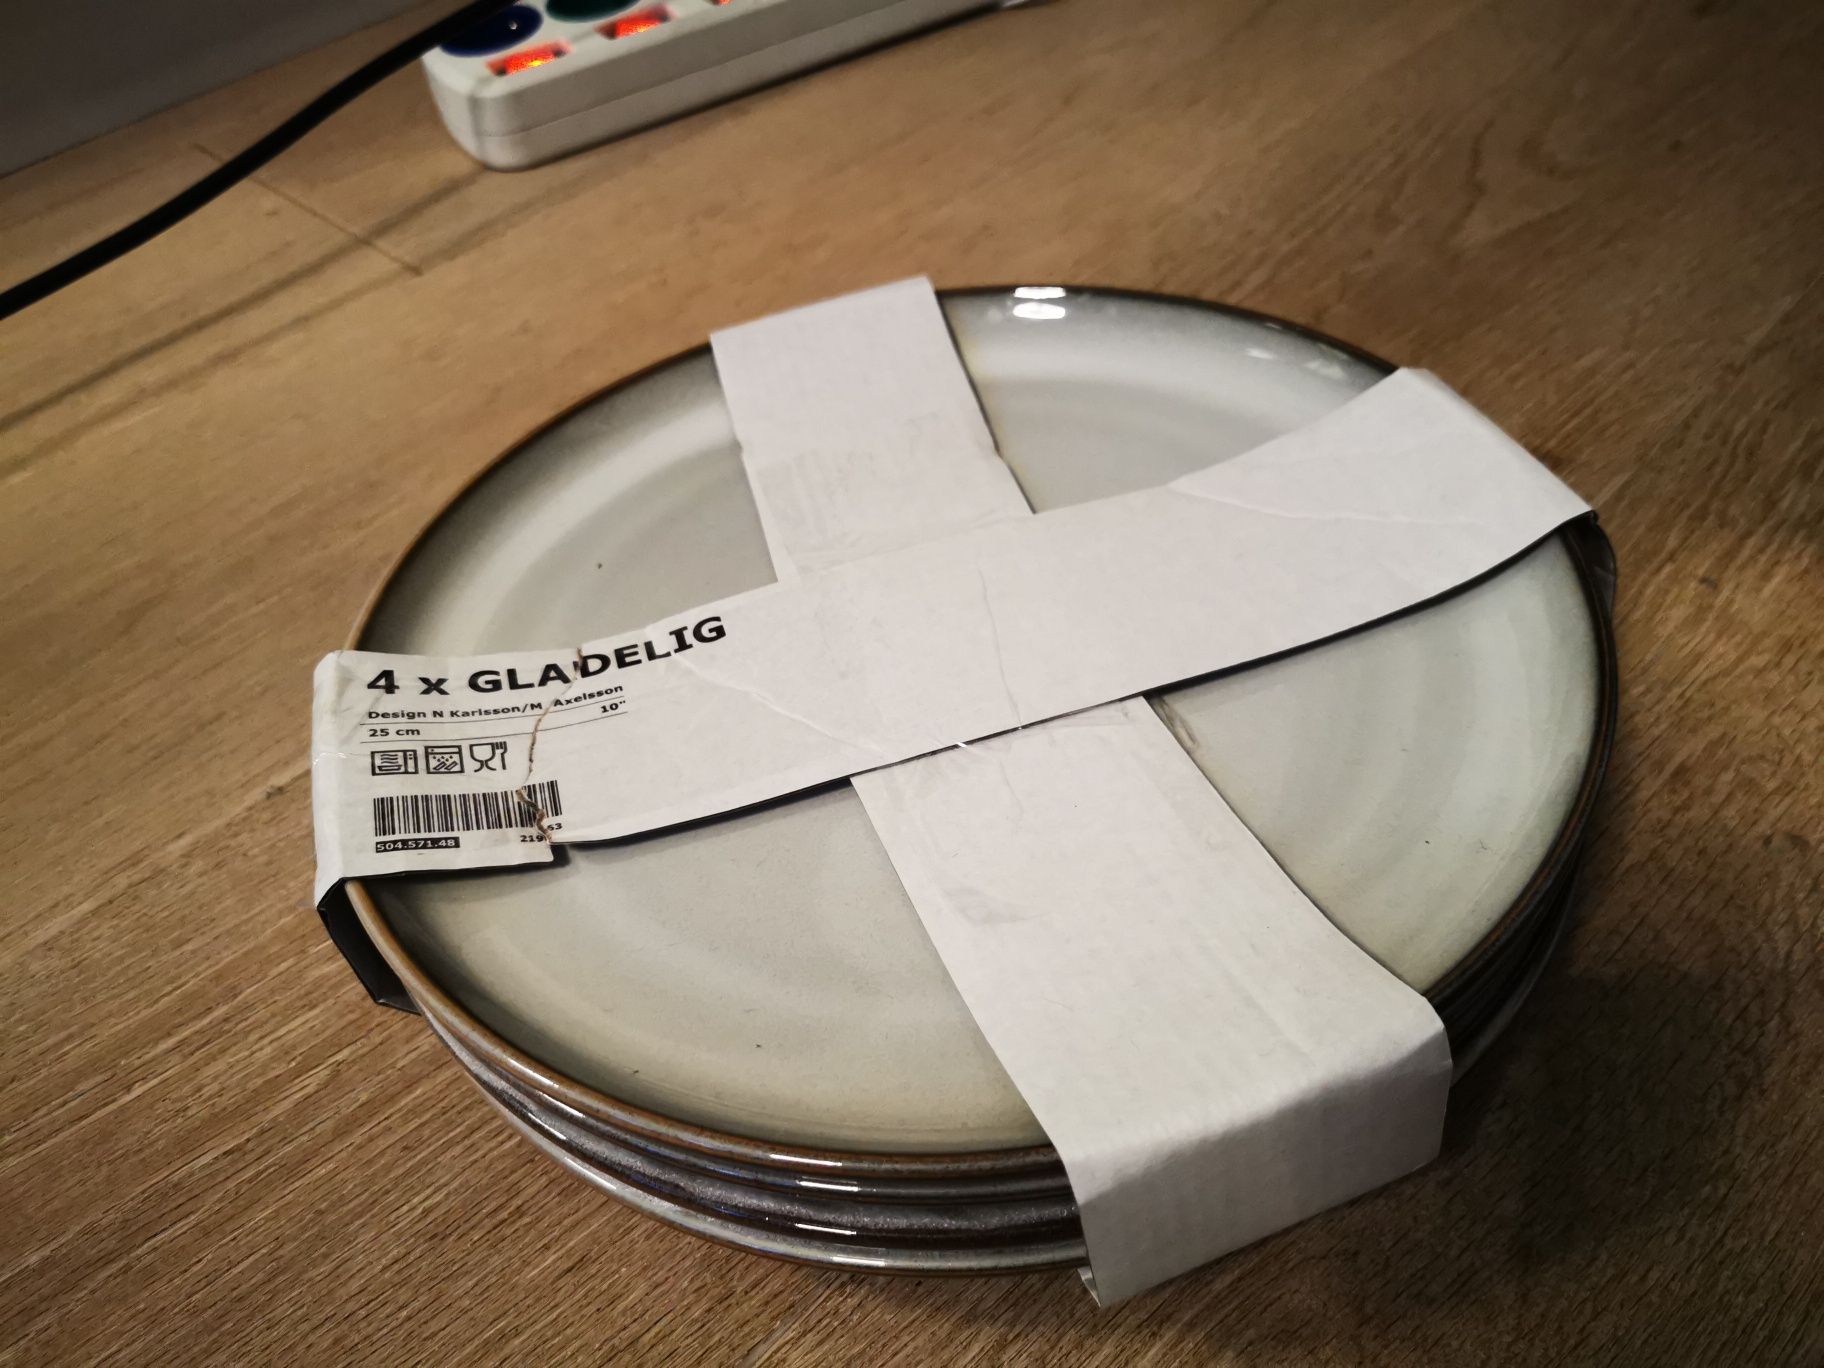 Zestaw 4 talerzy Ikea Gladelig 25 cm średnicy